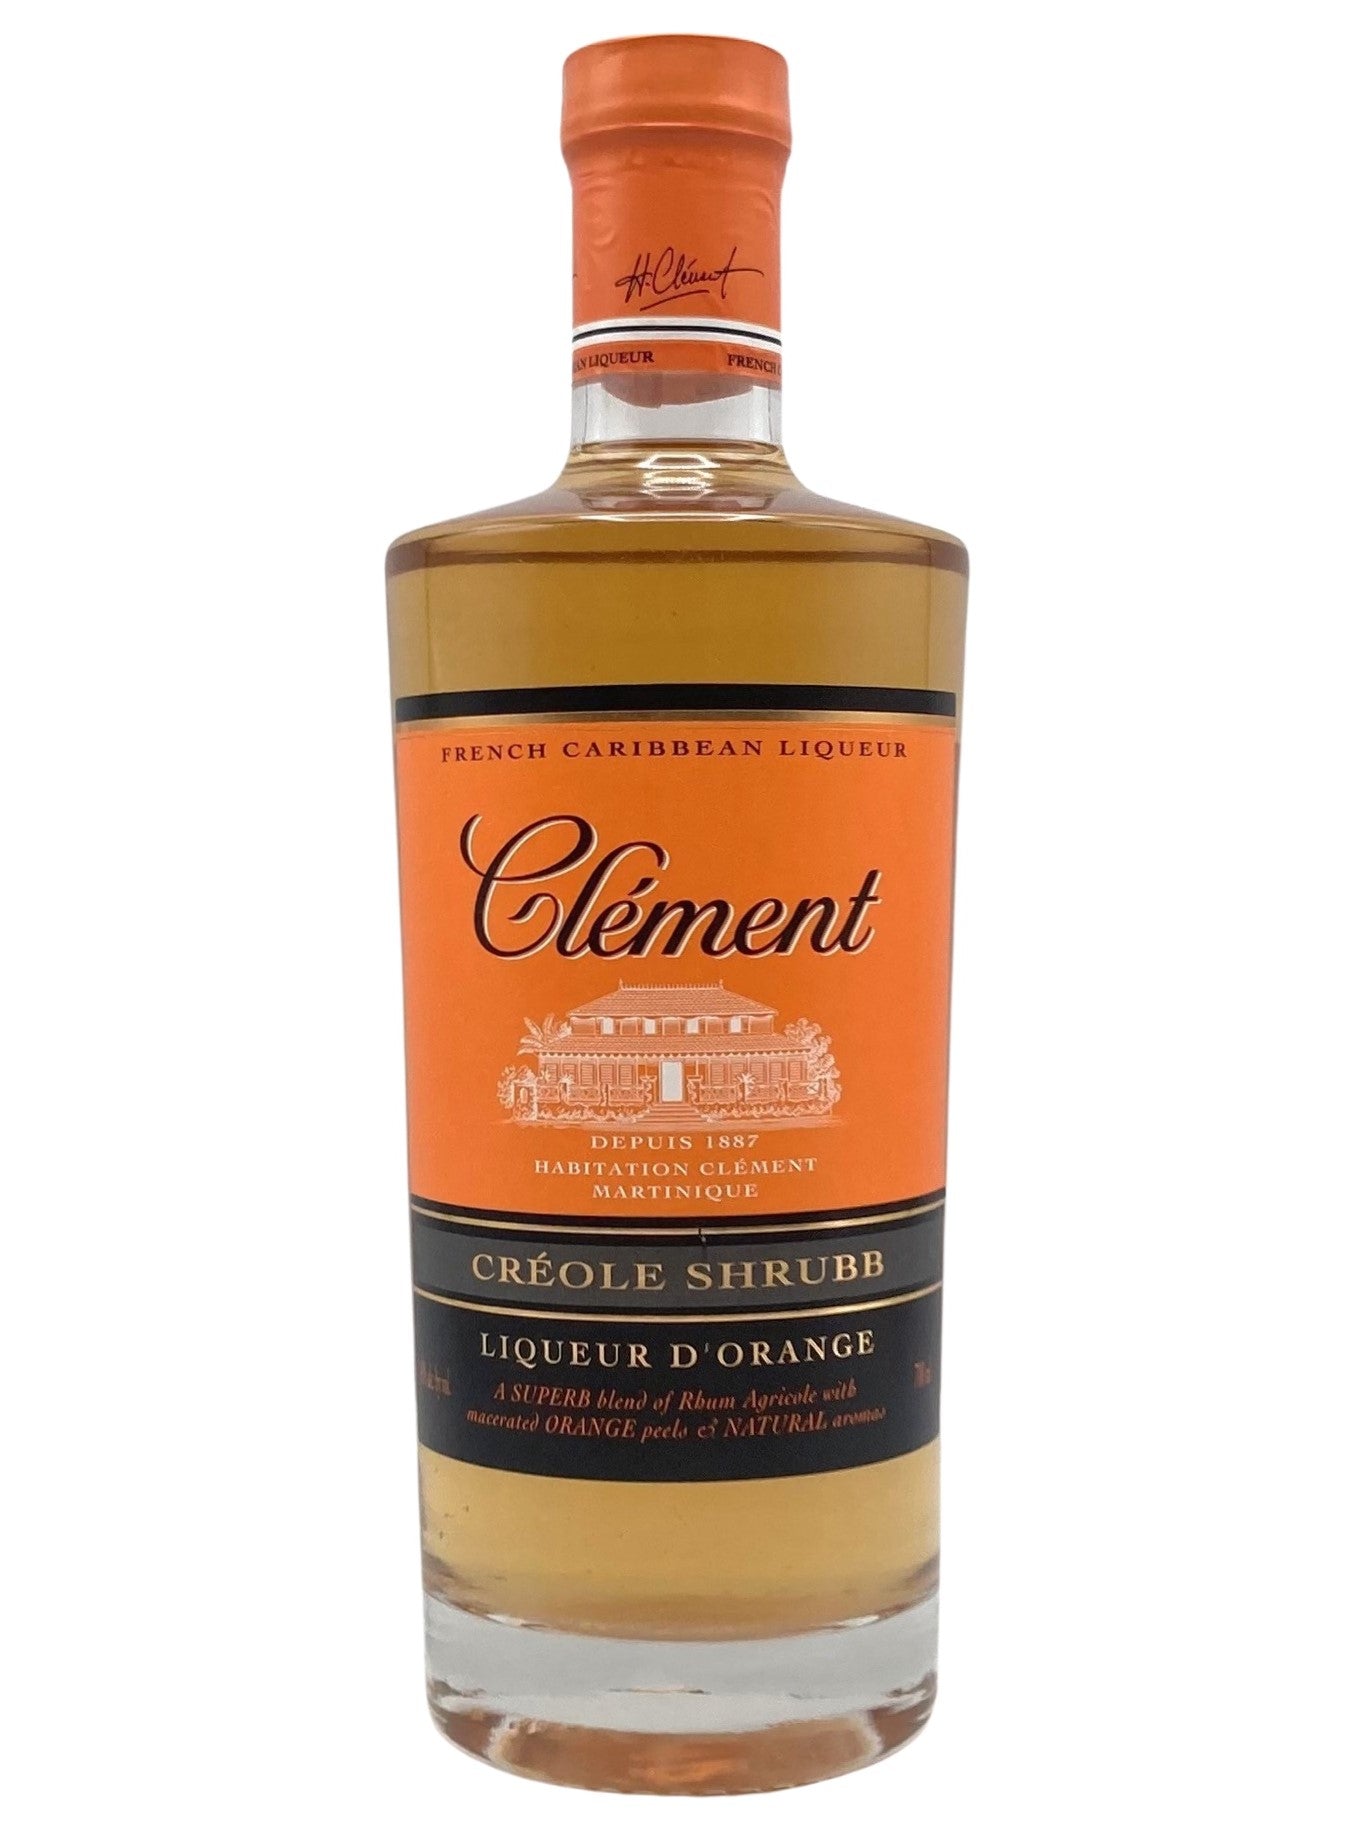 Clement Creole Shrubb Orange Liqueur